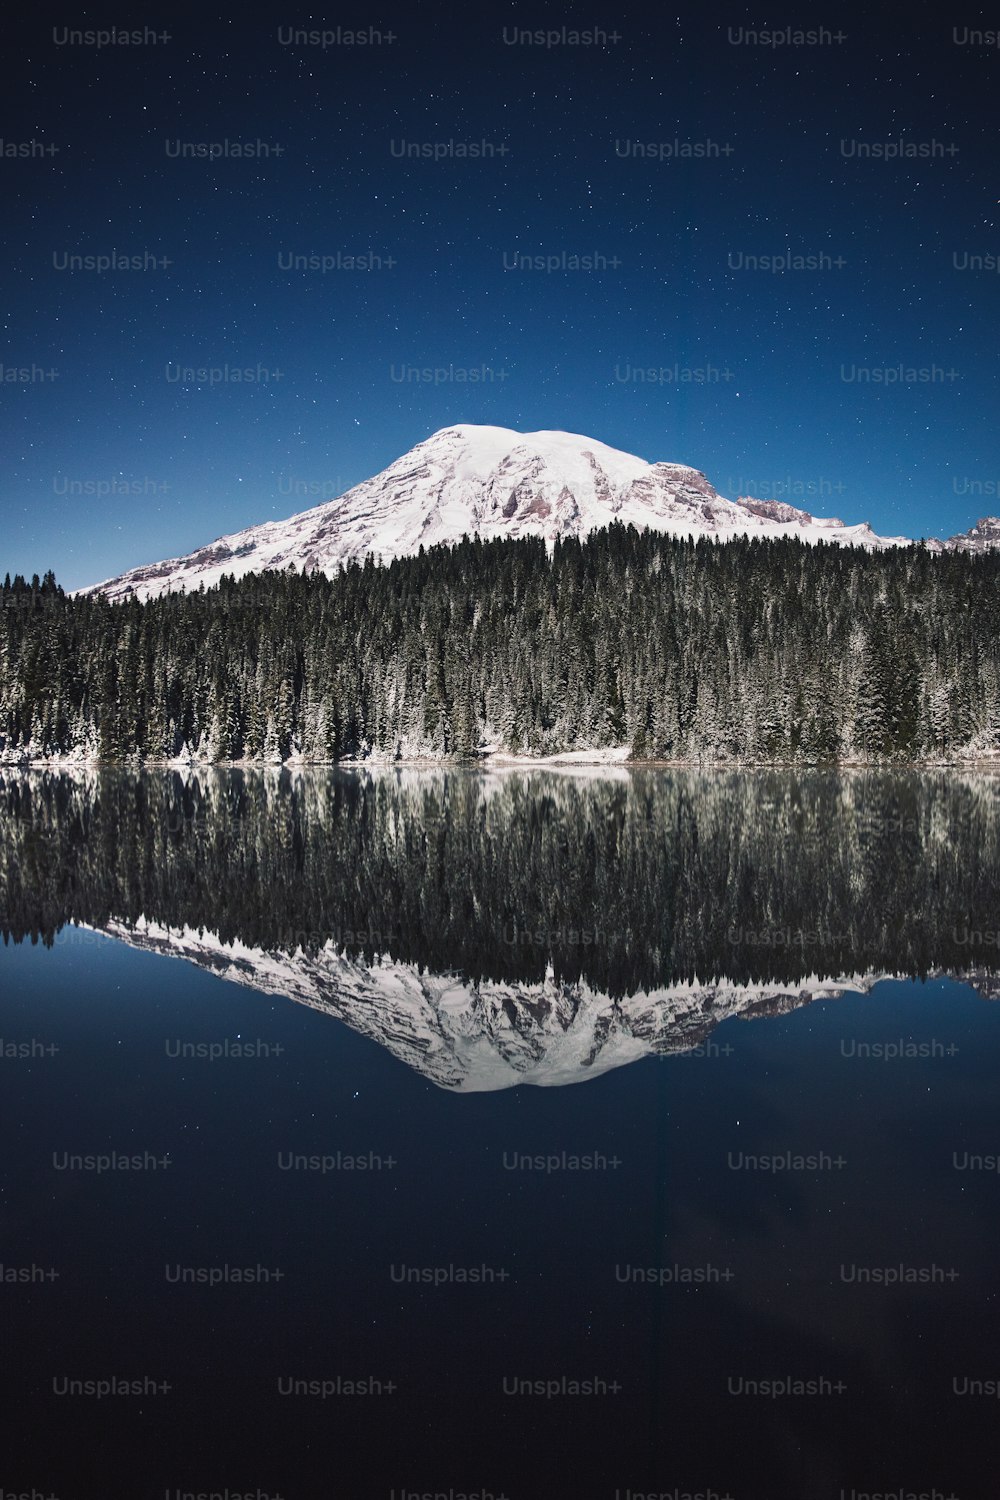 Une montagne enneigée se reflète dans l’eau calme d’un lac